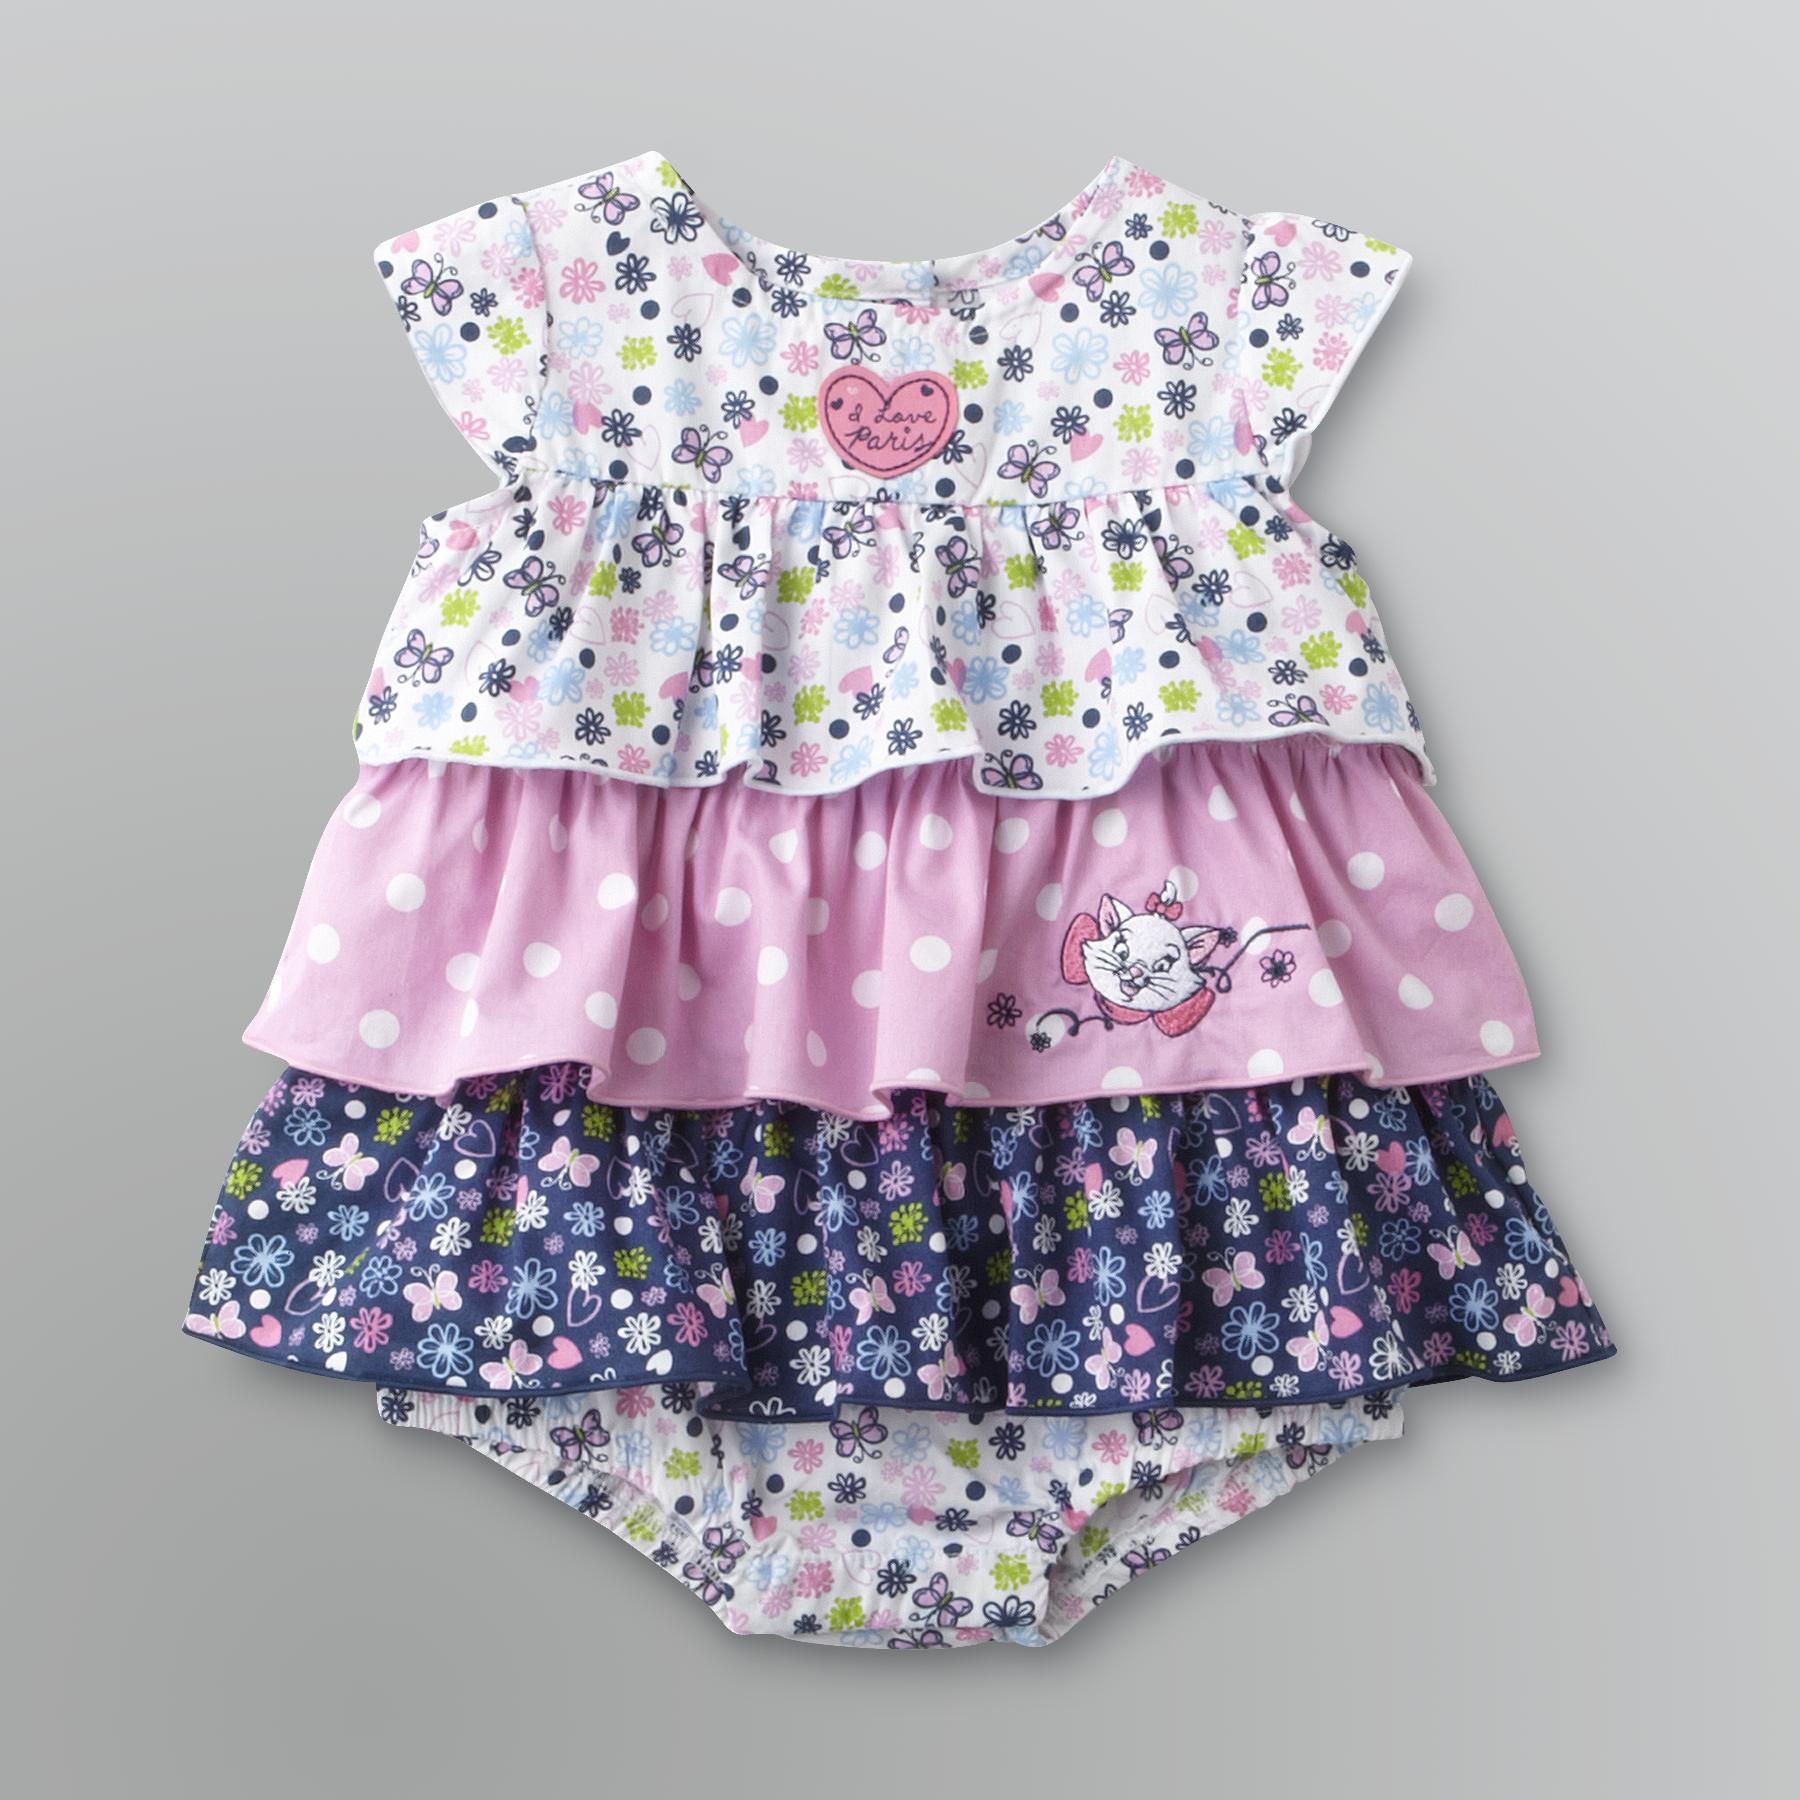 Disney Infant Girl's Ruffled Dress - Marie